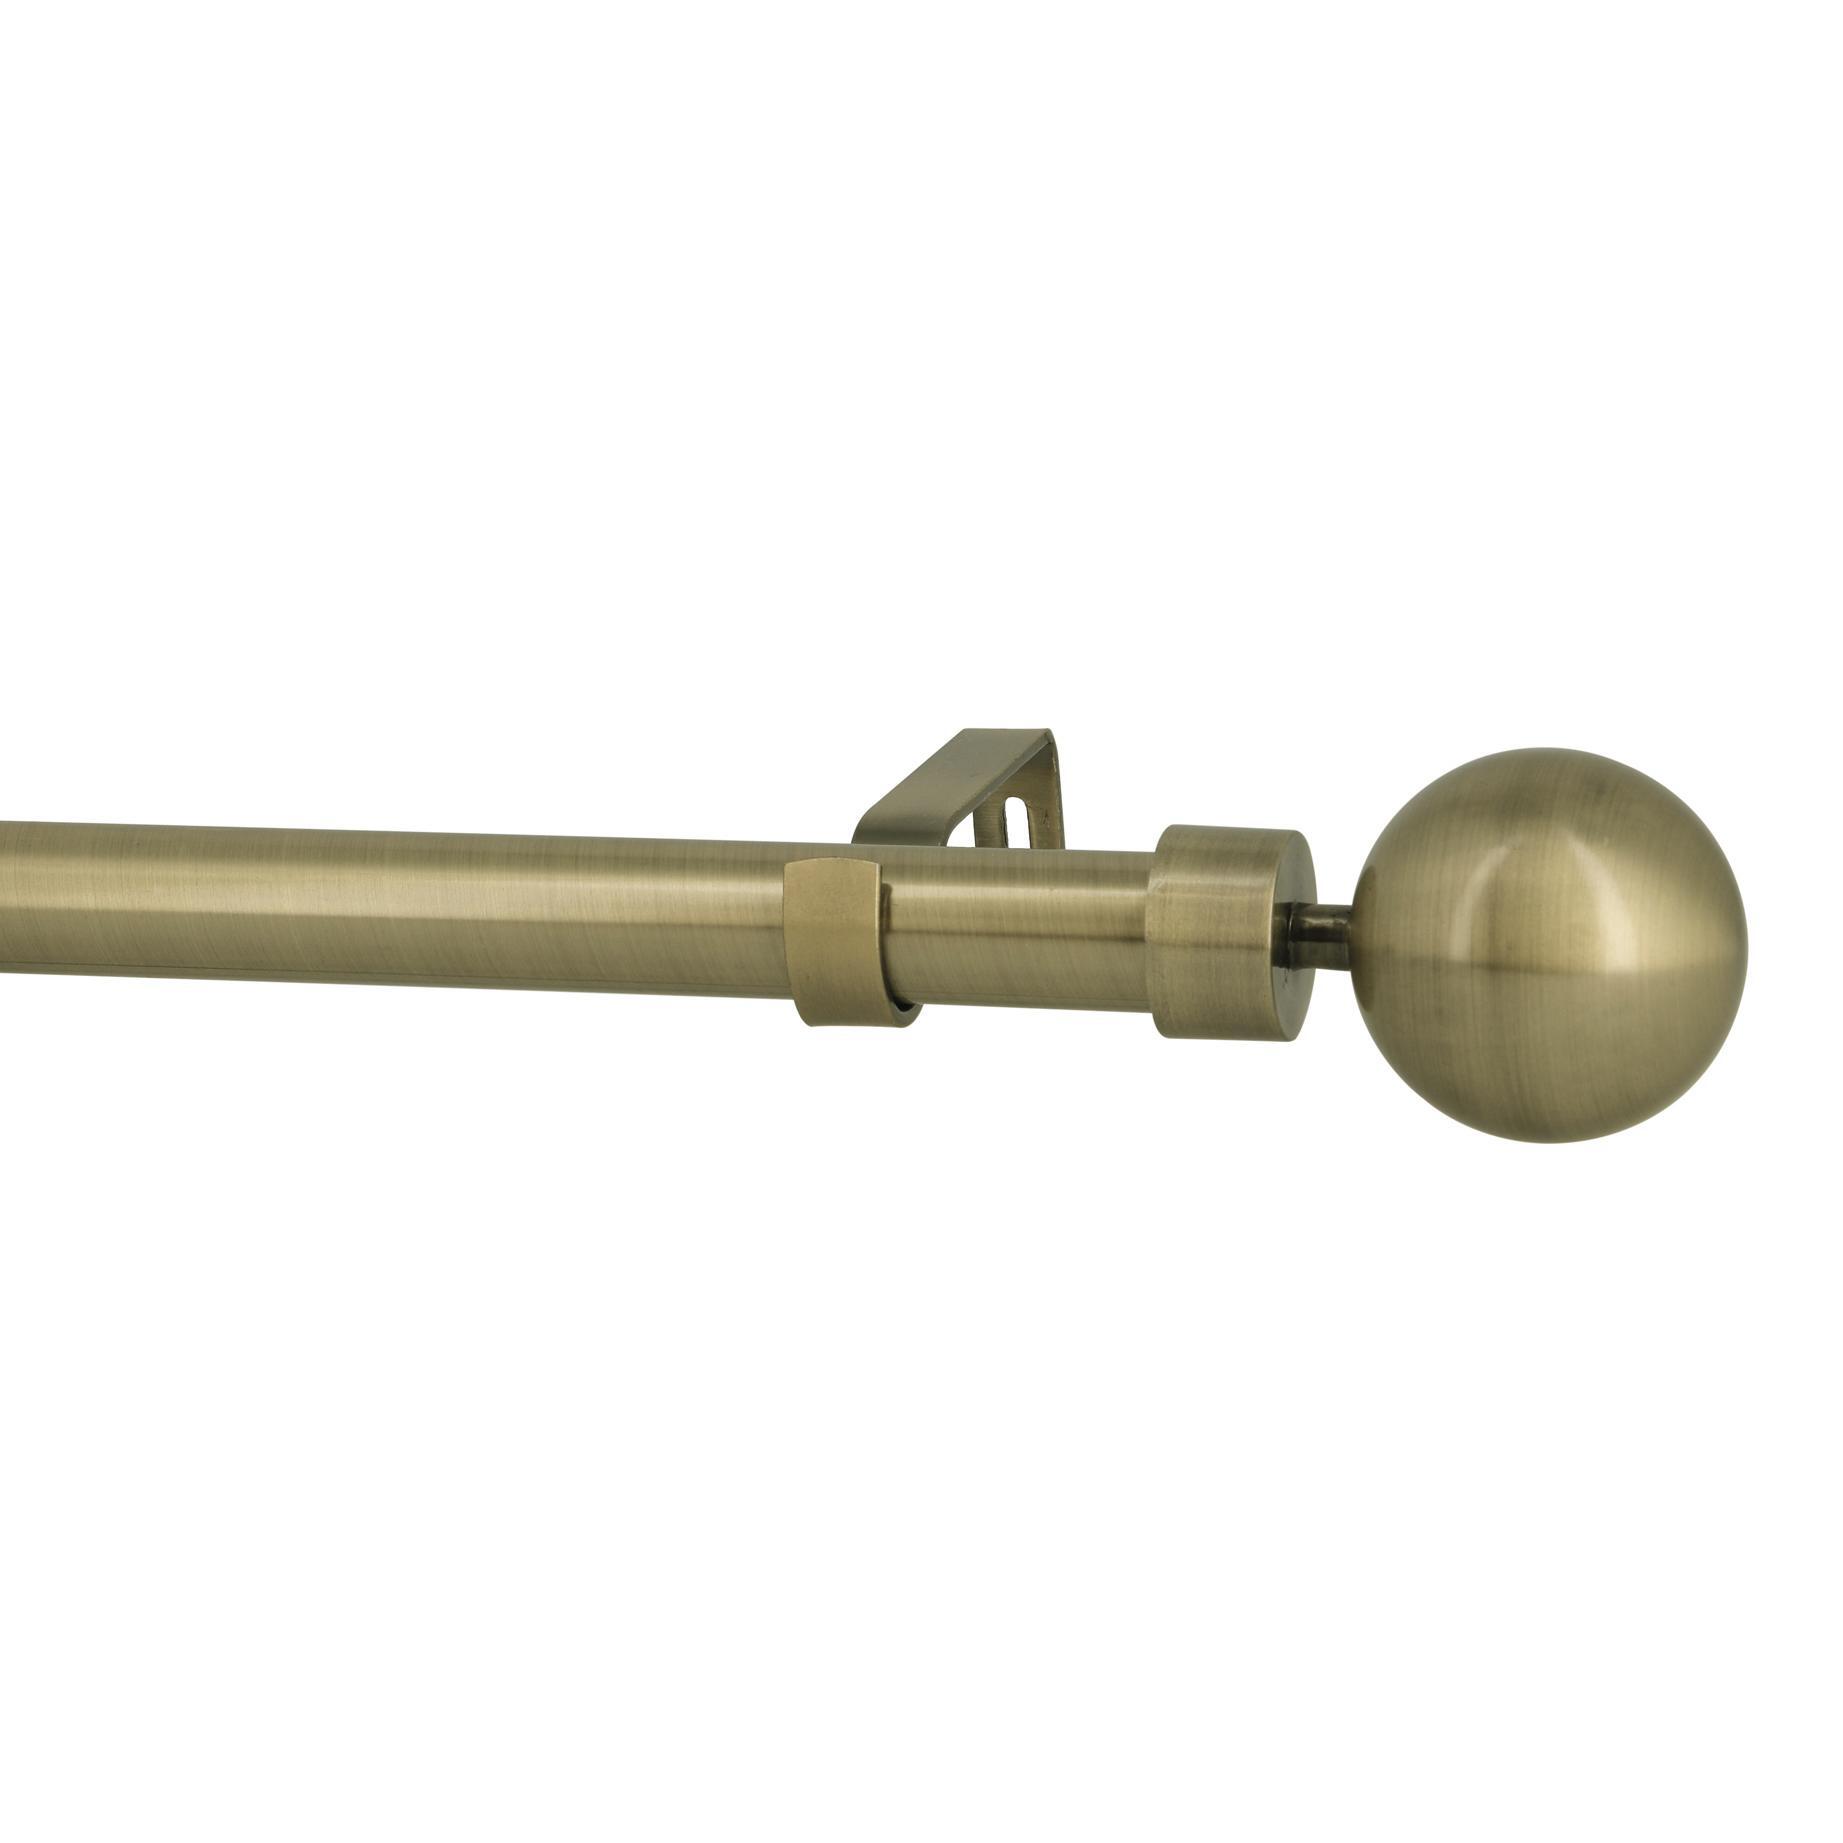 Kit bastone per tenda estensibile Palla in metallo 25/28mm dorato spazzolato da 200 a 360 cm - 1